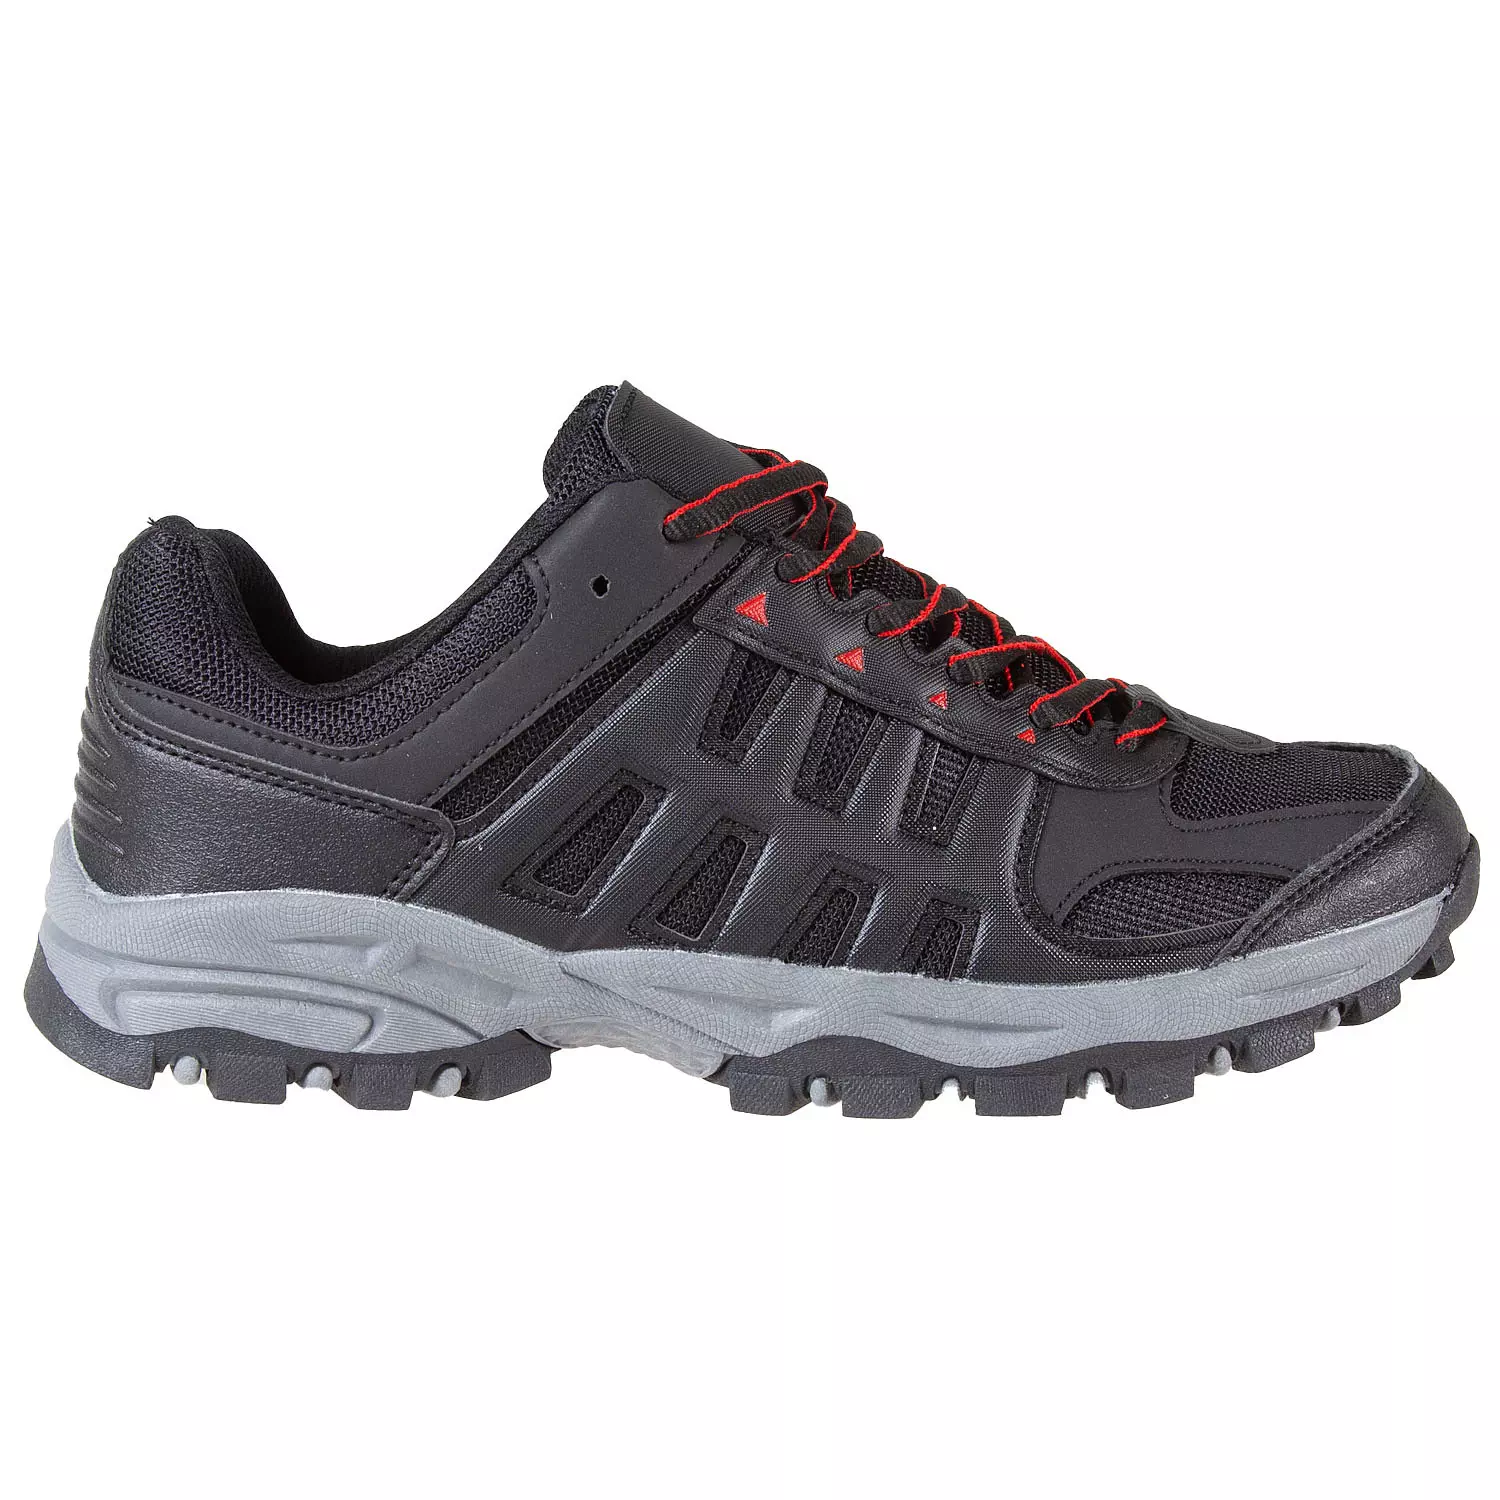 Men's lace-up, low-cut hiking shoes, size 9